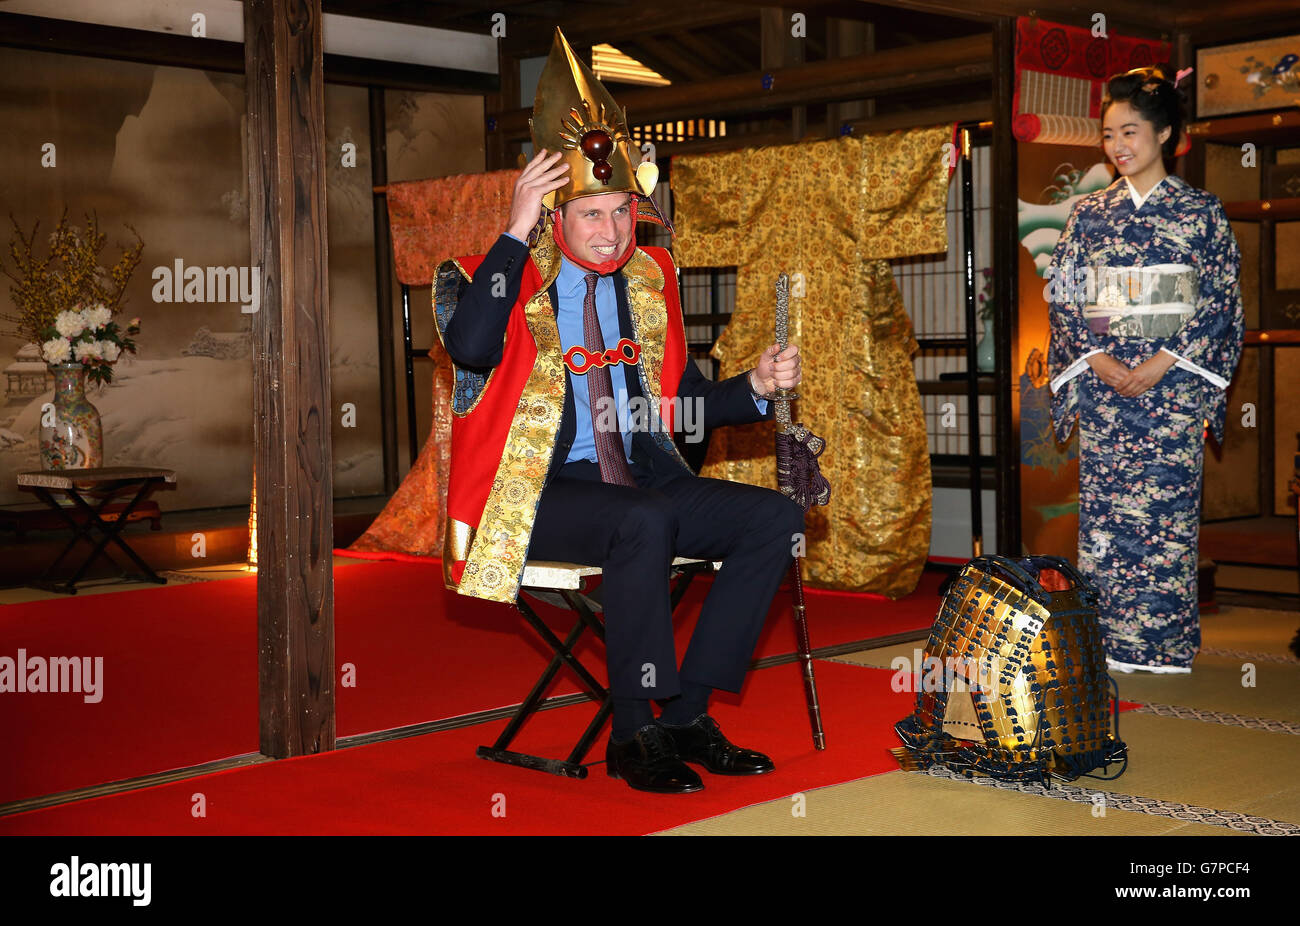 Der Herzog von Cambridge ist als Samurai-König gekleidet, als er am dritten Tag seines Besuchs in Japan ein historisches Drama in den NHK Public Broadcasting Studios in Tokio besuchte. Stockfoto